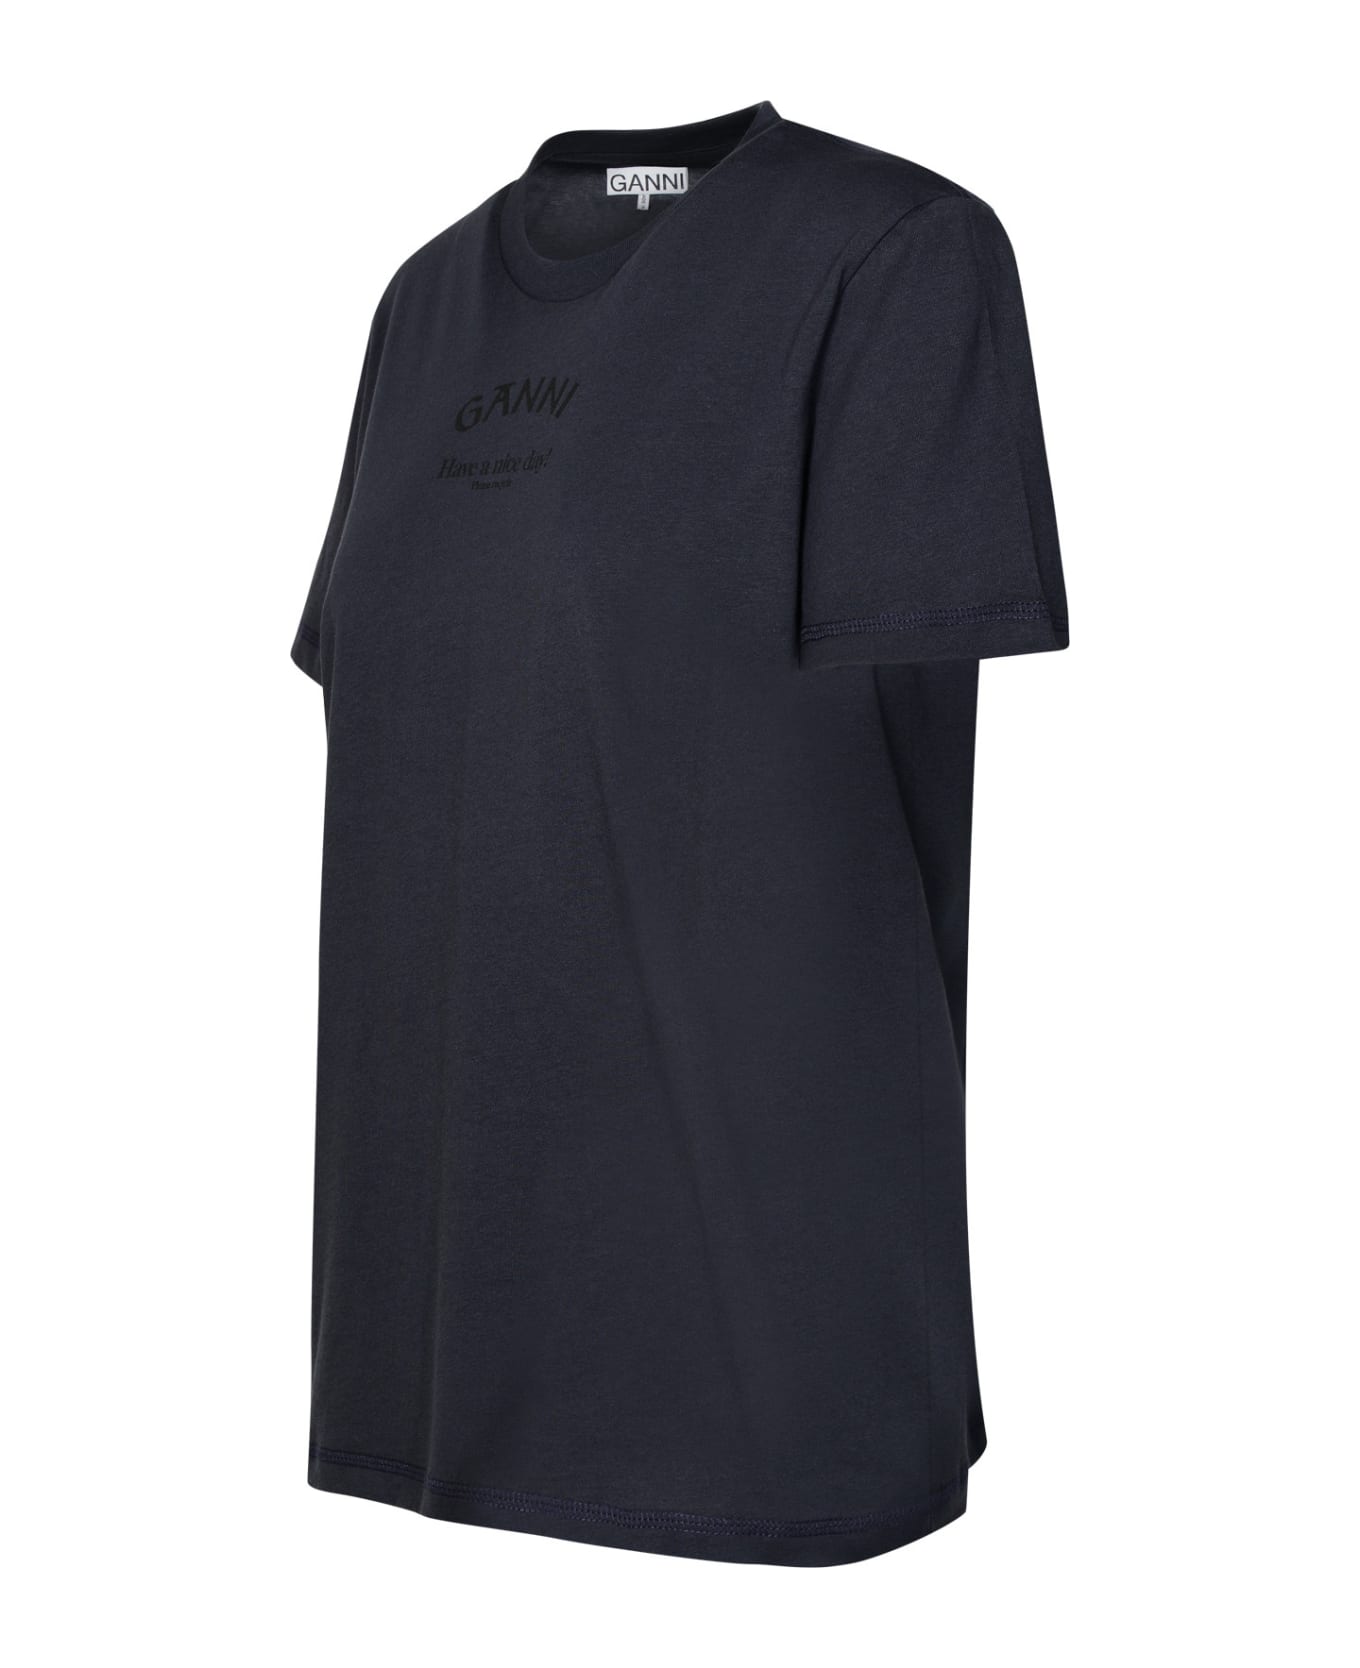 Ganni 'ganni' Navy Cotton T-shirt - Navy